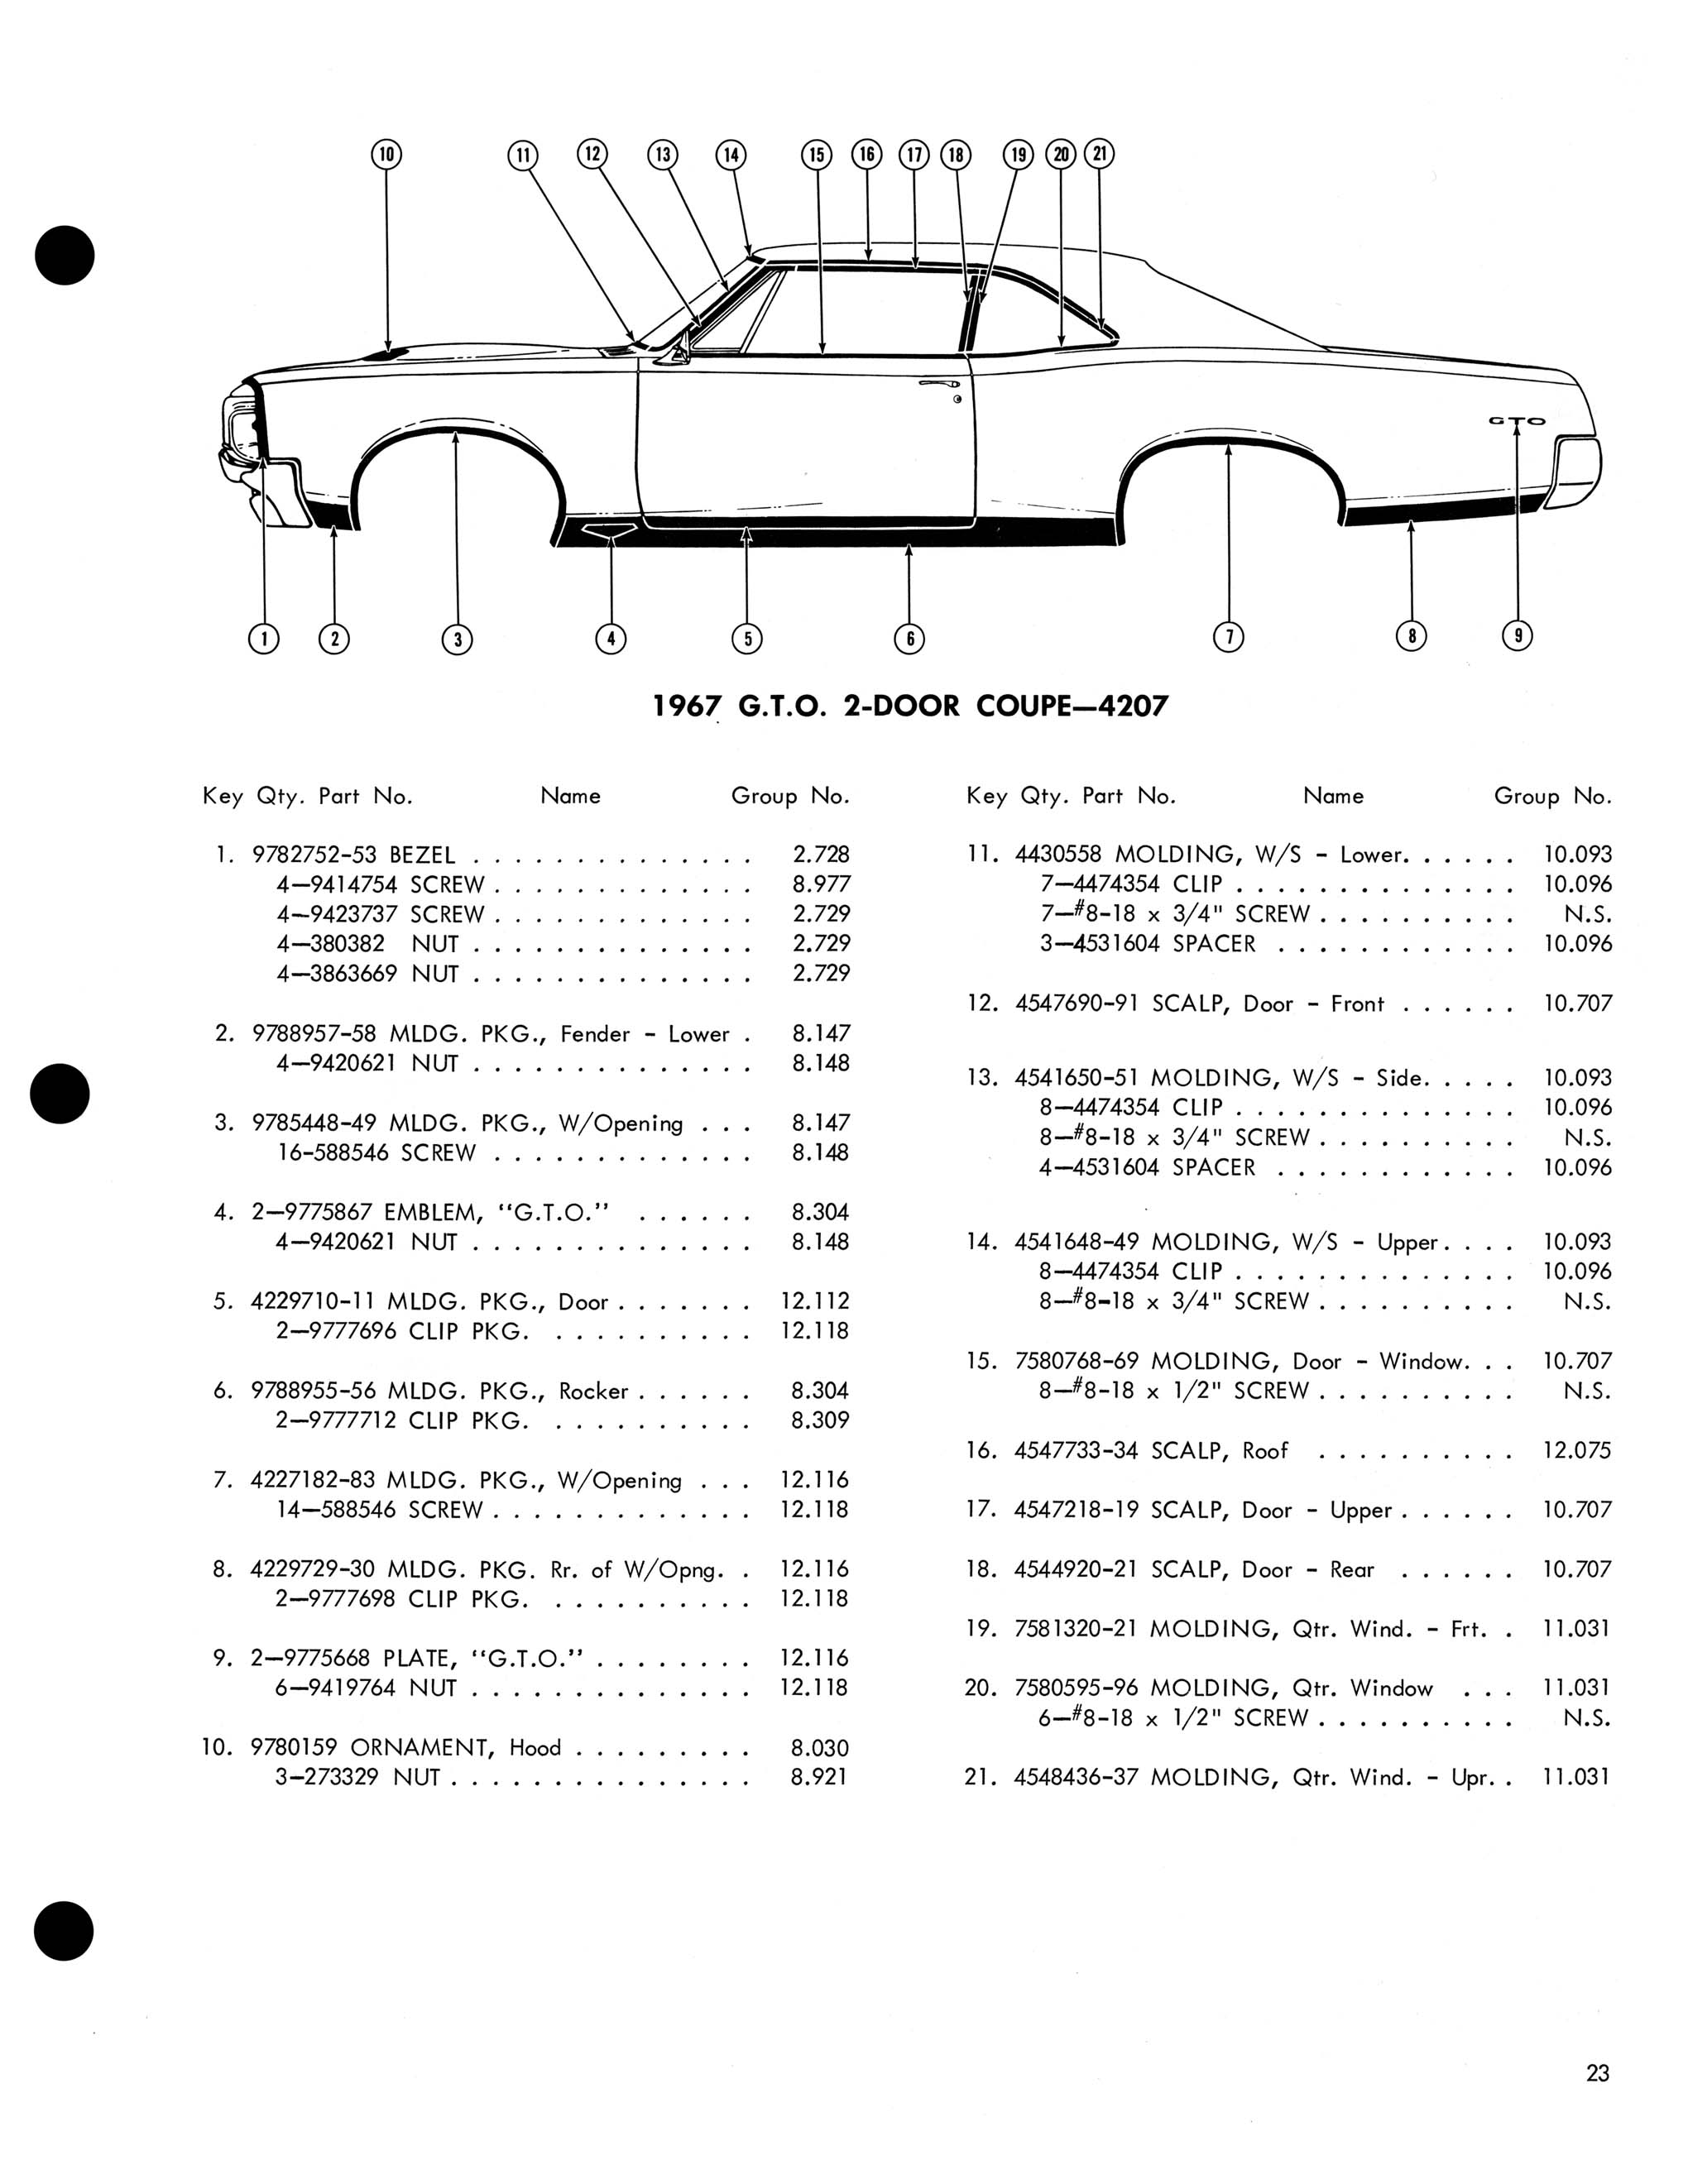 1967 Pontiac Molding and Clip Catalog-23